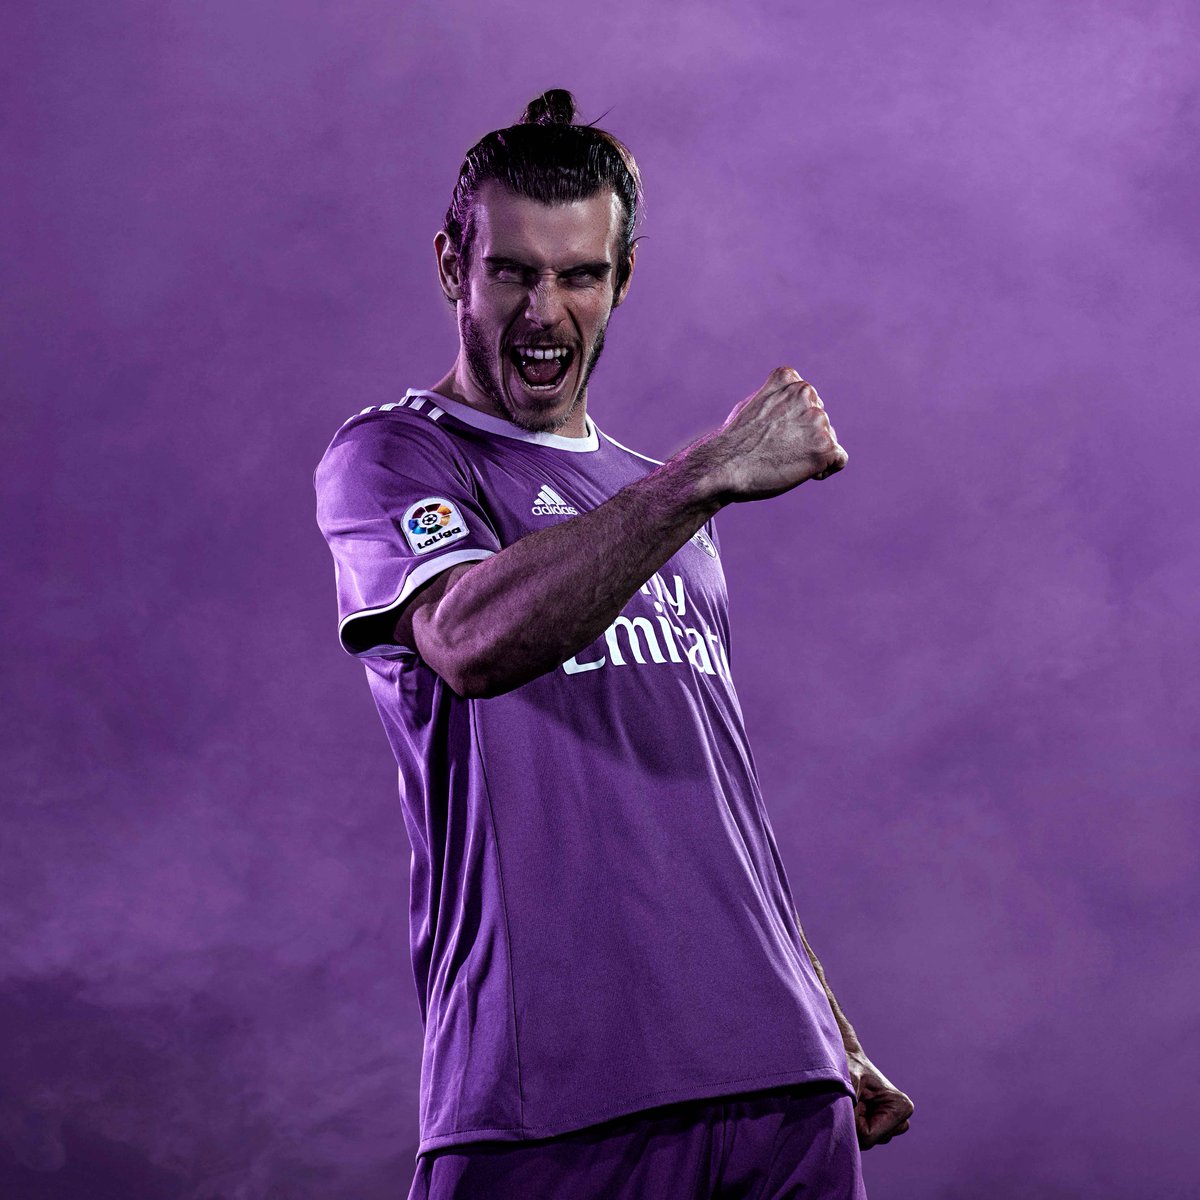 schoner Gelijkwaardig Peru Real Madrid Info ³⁵ on Twitter: "New Kit | Bale https://t.co/FcFye7YpVI" /  Twitter